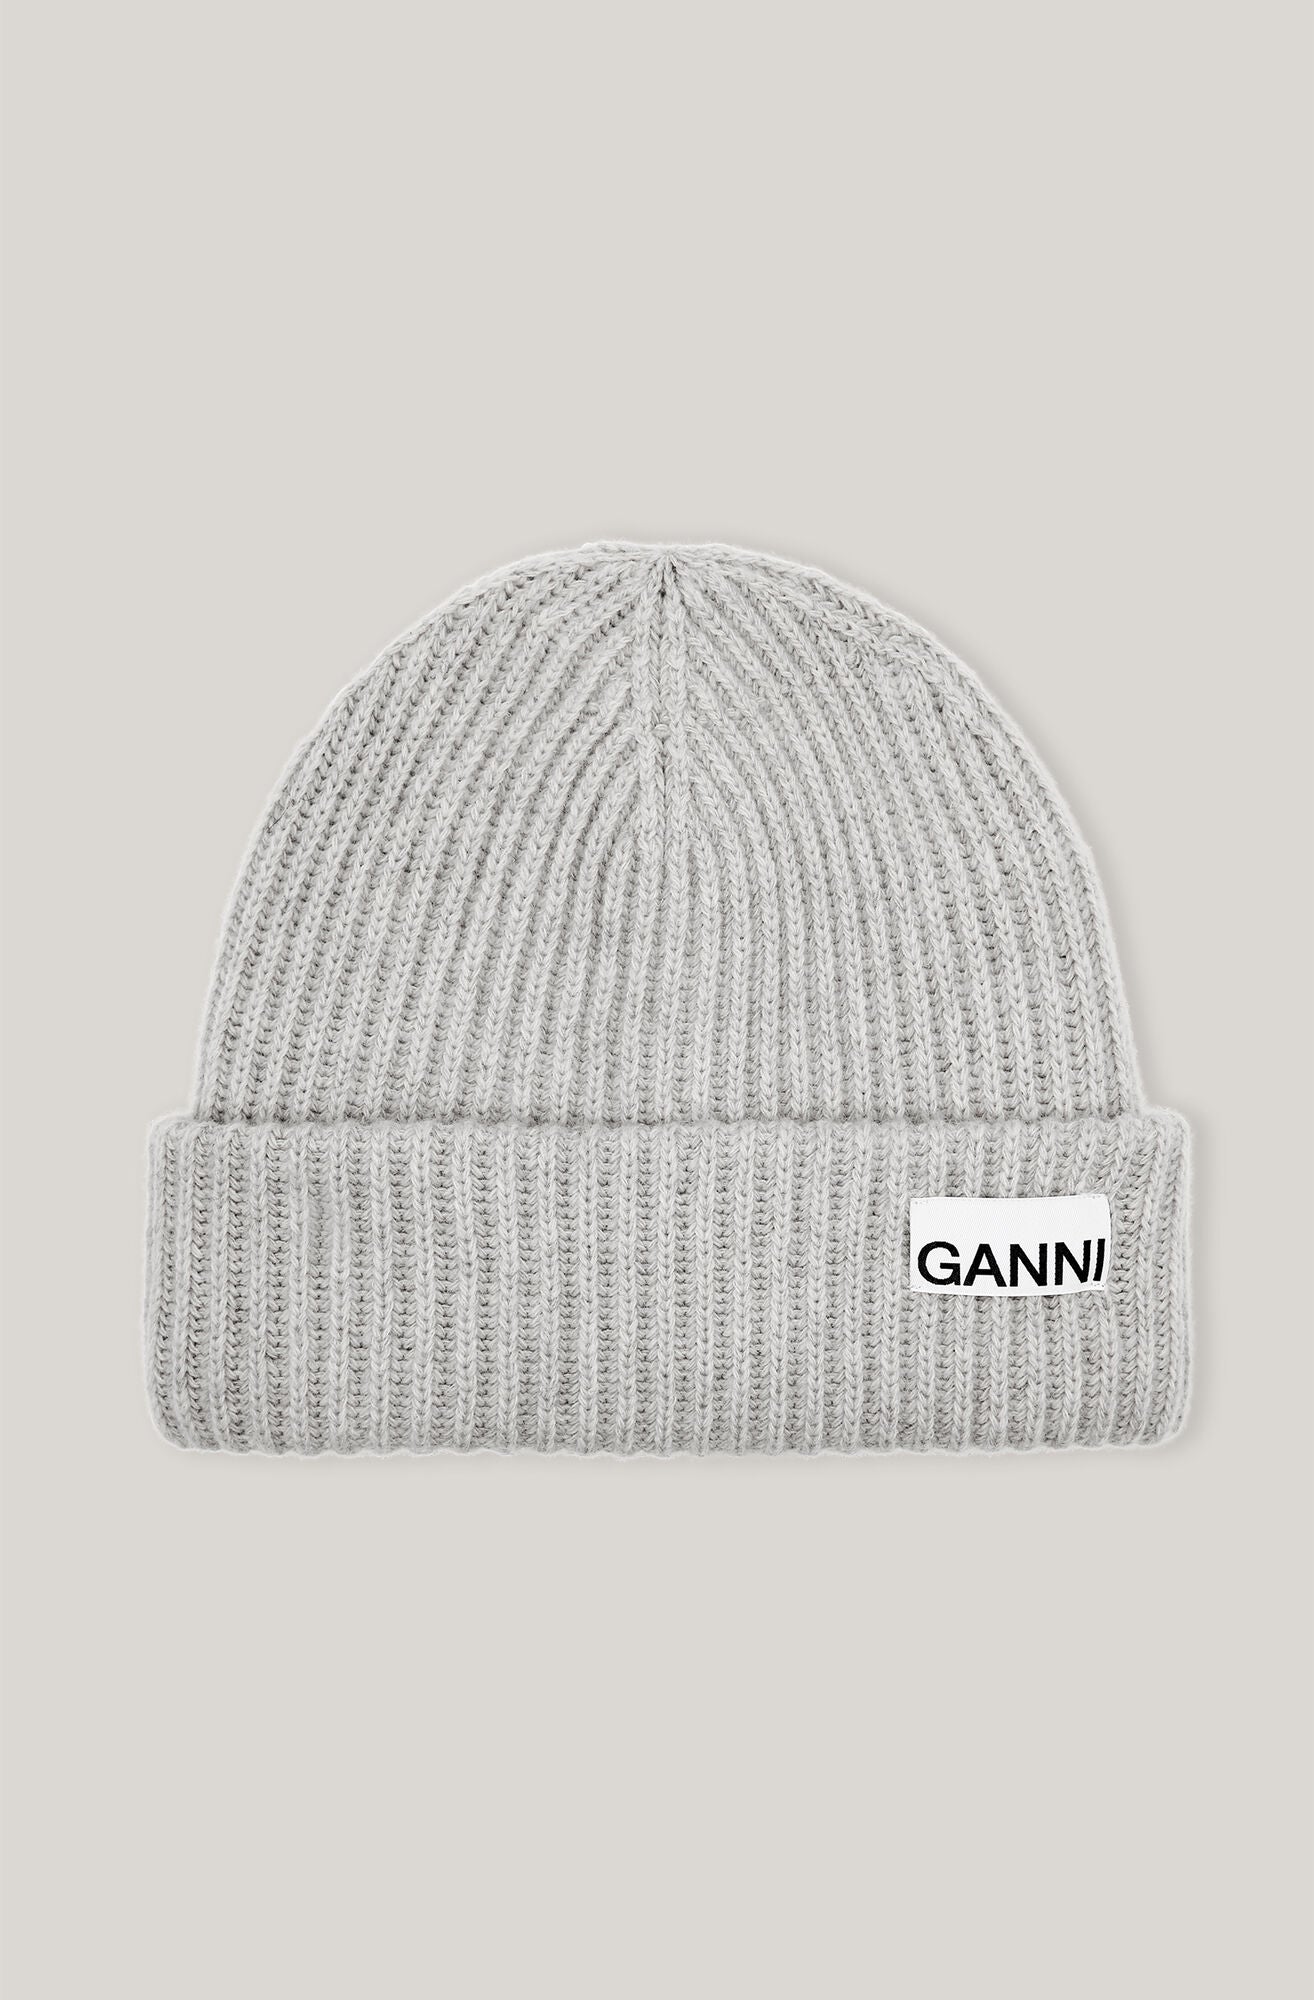 Ganni A3536 grey wool beanie hat